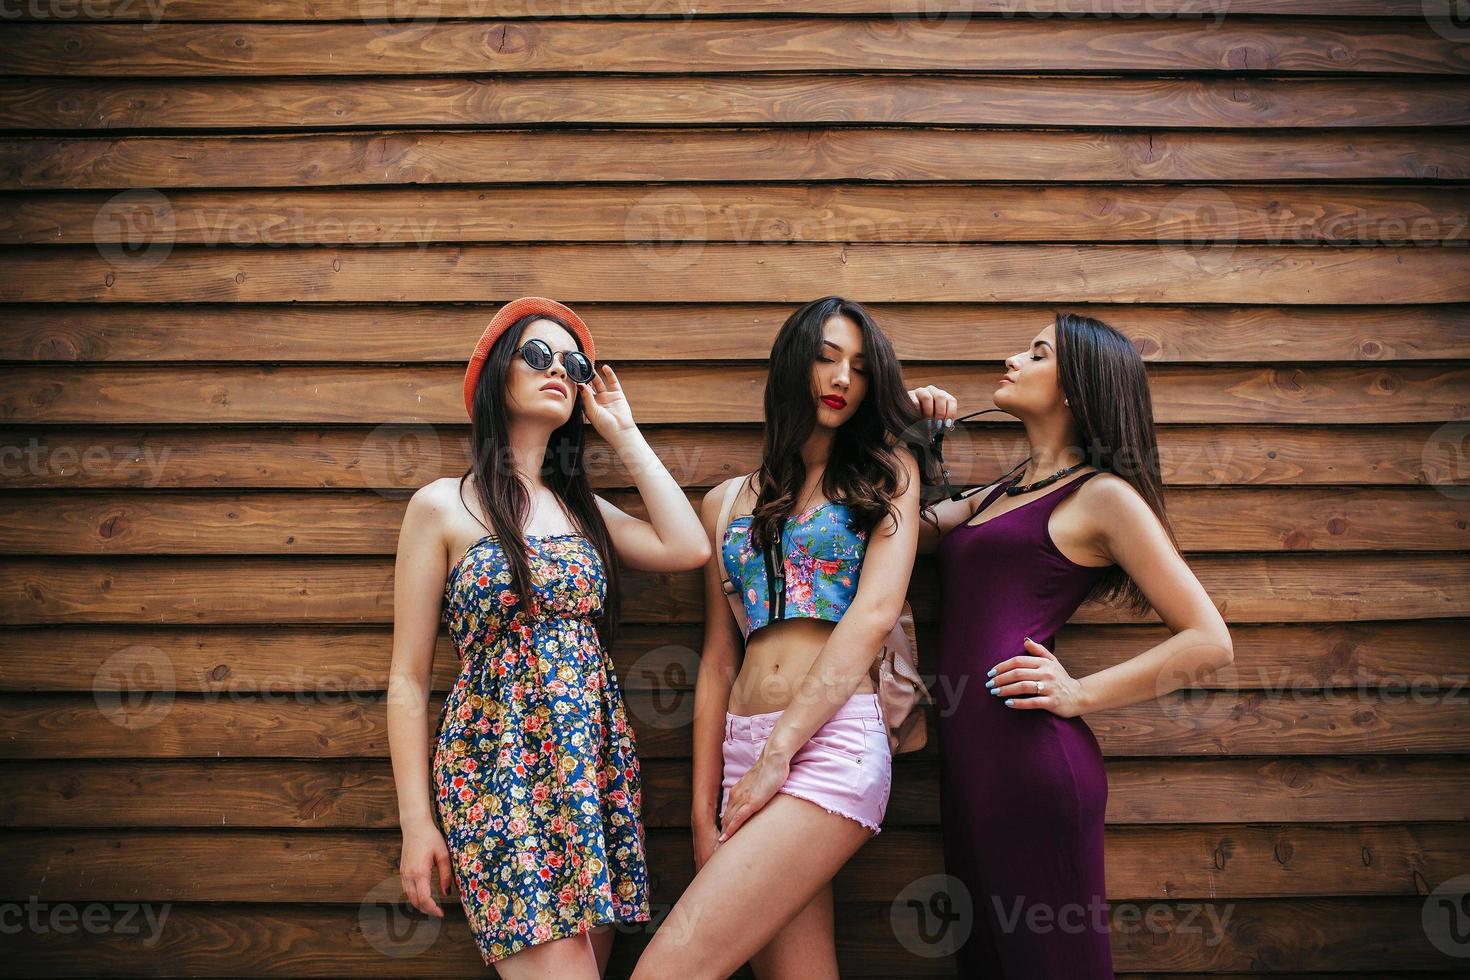 tres hermosas chicas jóvenes foto